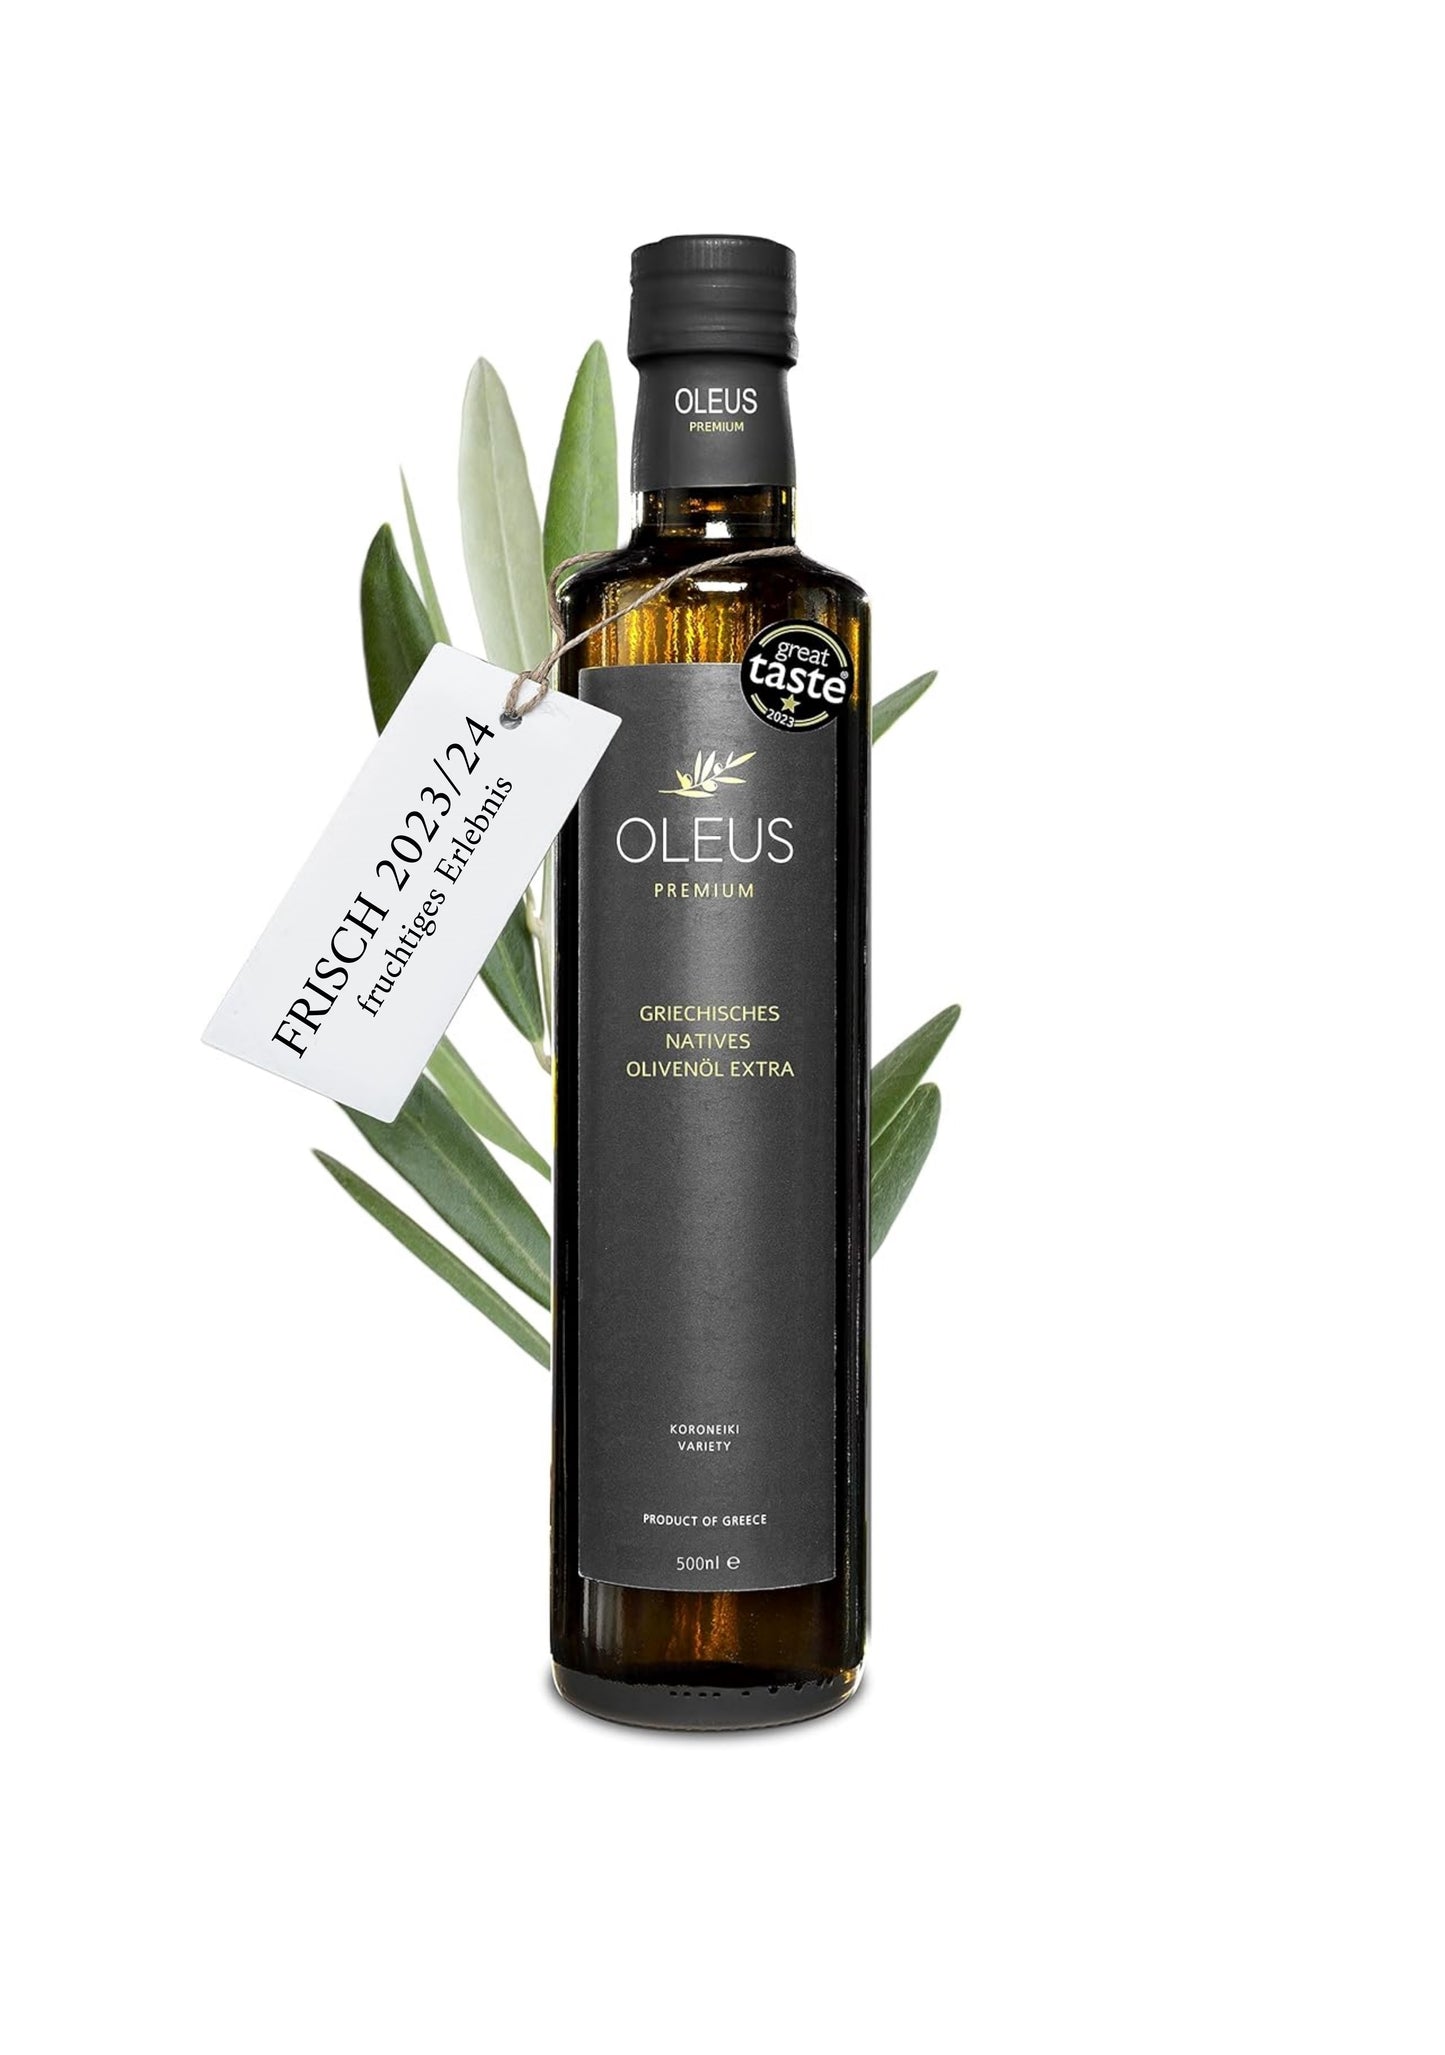 Oleus griechisches Olivenöl extra nativ - AWARD (6x500ml (3L.))